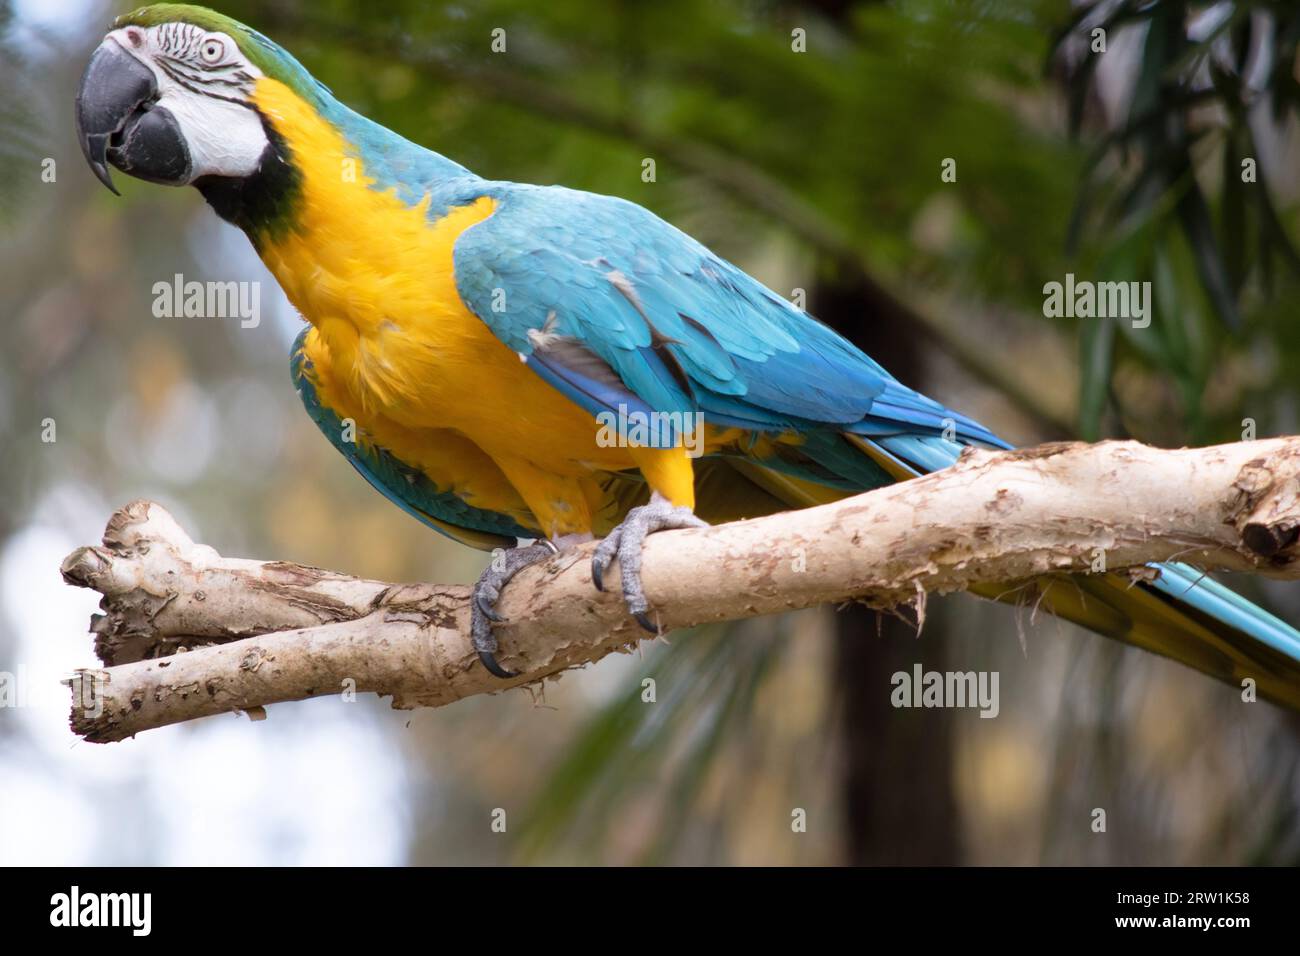 Les plumes du dos et de la queue supérieure de la macaw bleue et dorée sont bleu brillant; le dessous de la queue est jaune olive. Banque D'Images